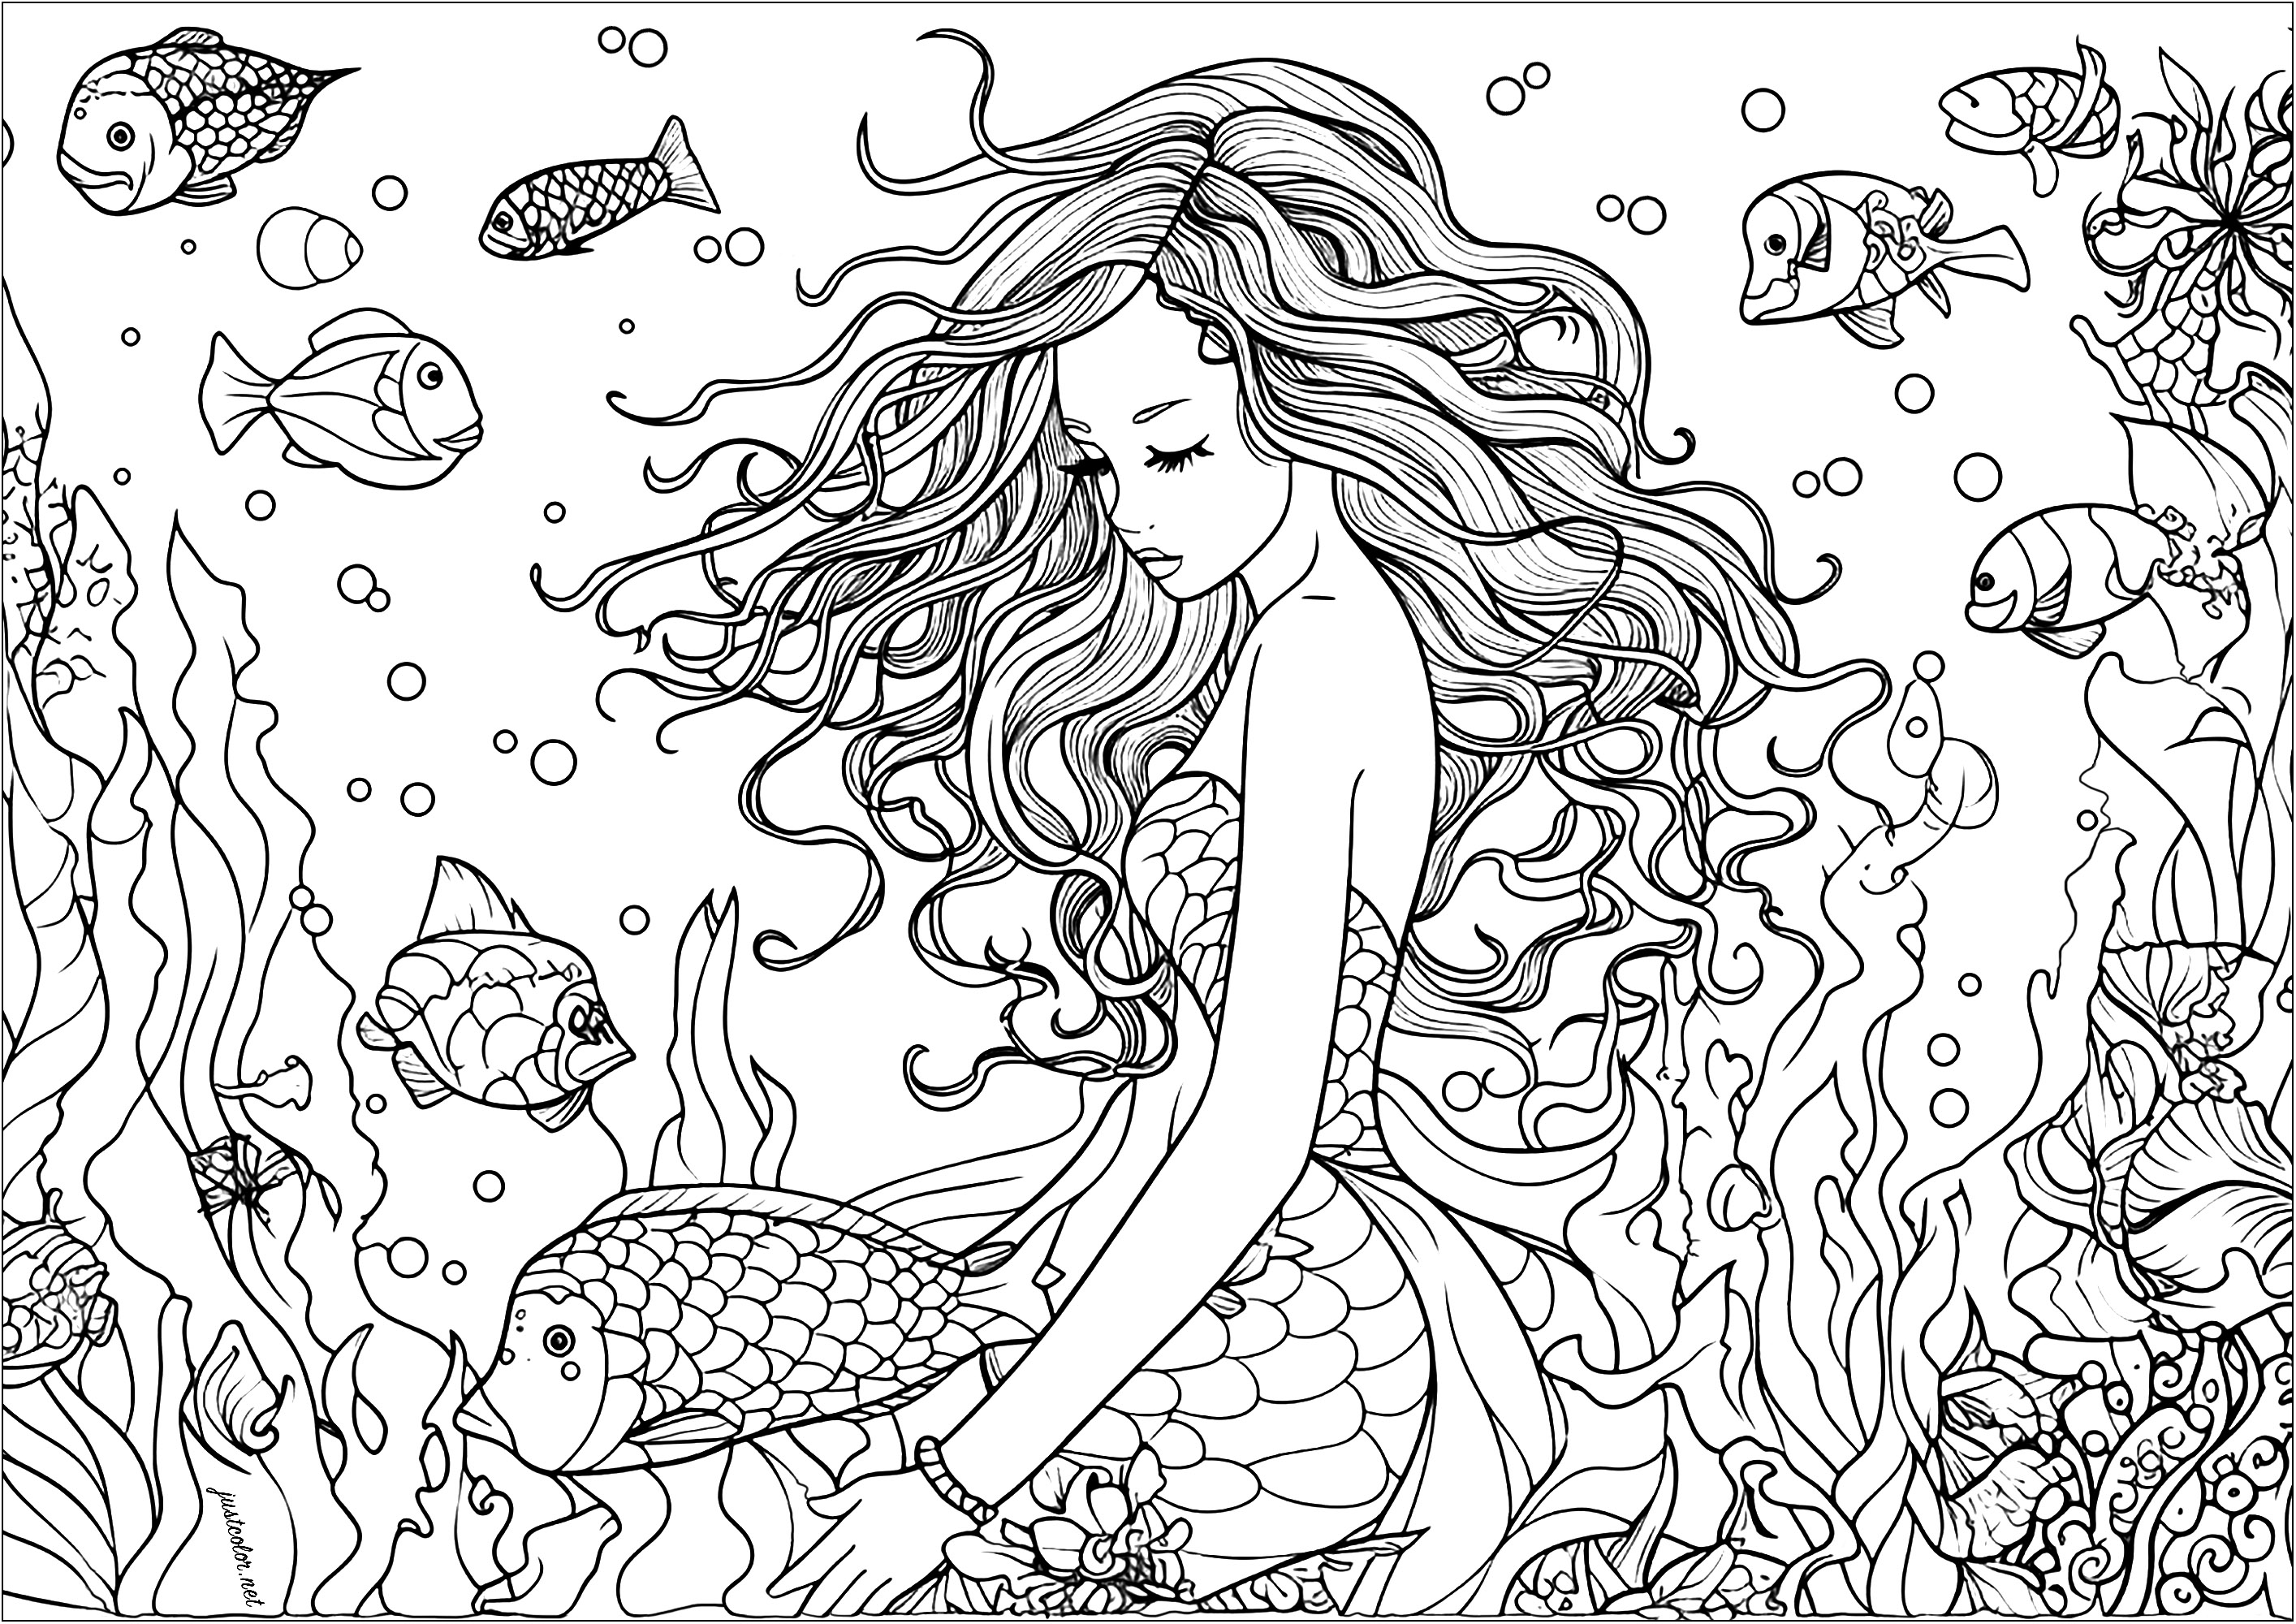 Ausmalen einer schönen Meerjungfrau, umgeben von Fischen. Diese Meerjungfrau hat ein langes gewelltes Haar, färbt es und die schönen Fische, die sie umgeben, sowie die Algen und Korallen, die Teil dieser schönen Unterwasserlandschaft sind.